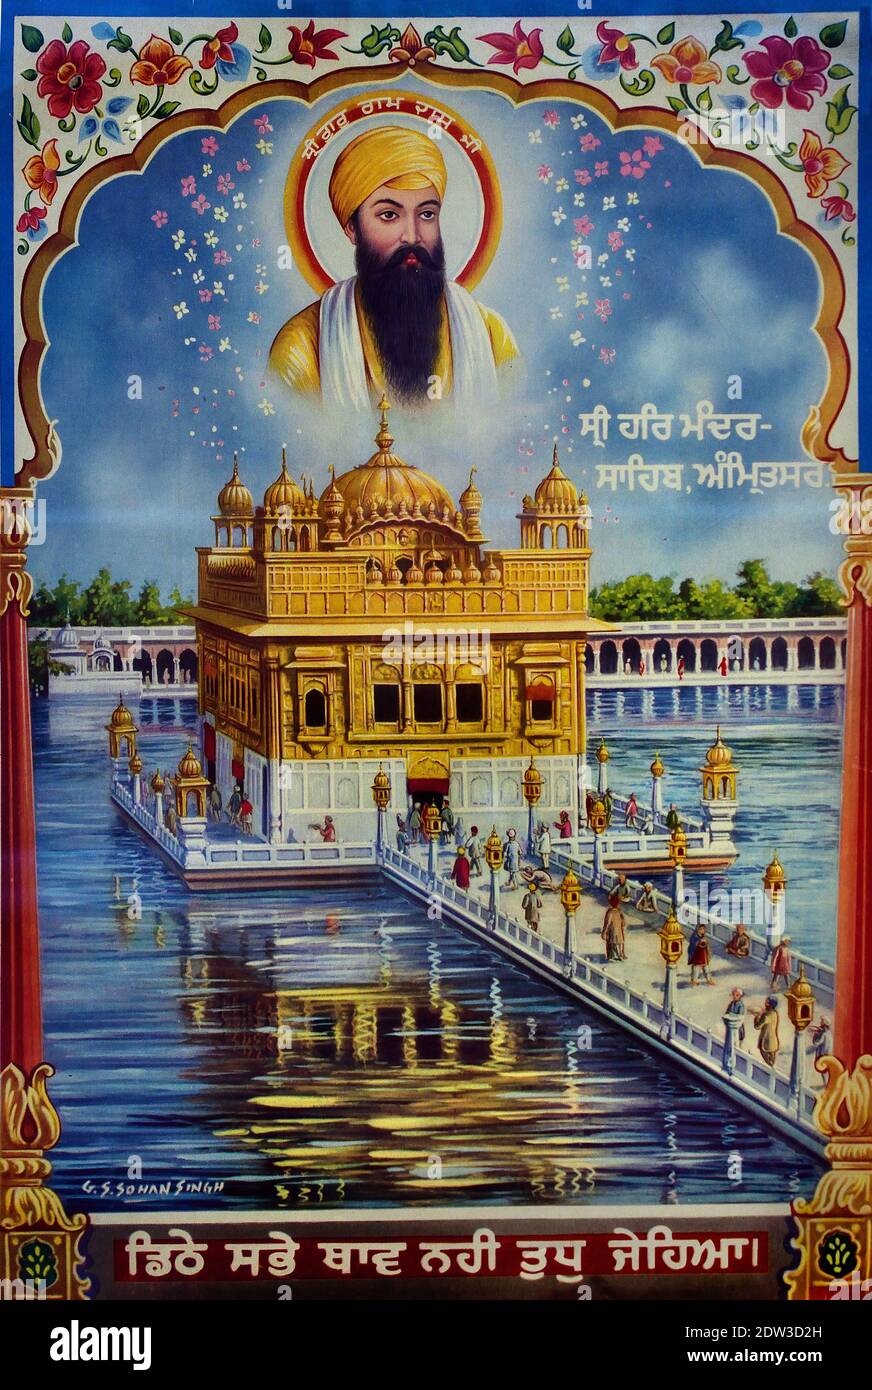 Il Tempio d'Oro, noto anche come Harmandir Sahib, che significa 'dimora di Dio' o Darbār Sahib, che significa 'corte esaltata'), il gurdwara è costruito intorno ad una piscina artificiale (sarovar) che è stato completato dal quarto Sikh Guru, Guru RAM Das nel 1577. Guru Arjan, il quinto Guru del Sikhism, Amritsar, Punjab, India. Luogo spirituale preminente di Sikhism.Amritsar India, indiano, Foto Stock